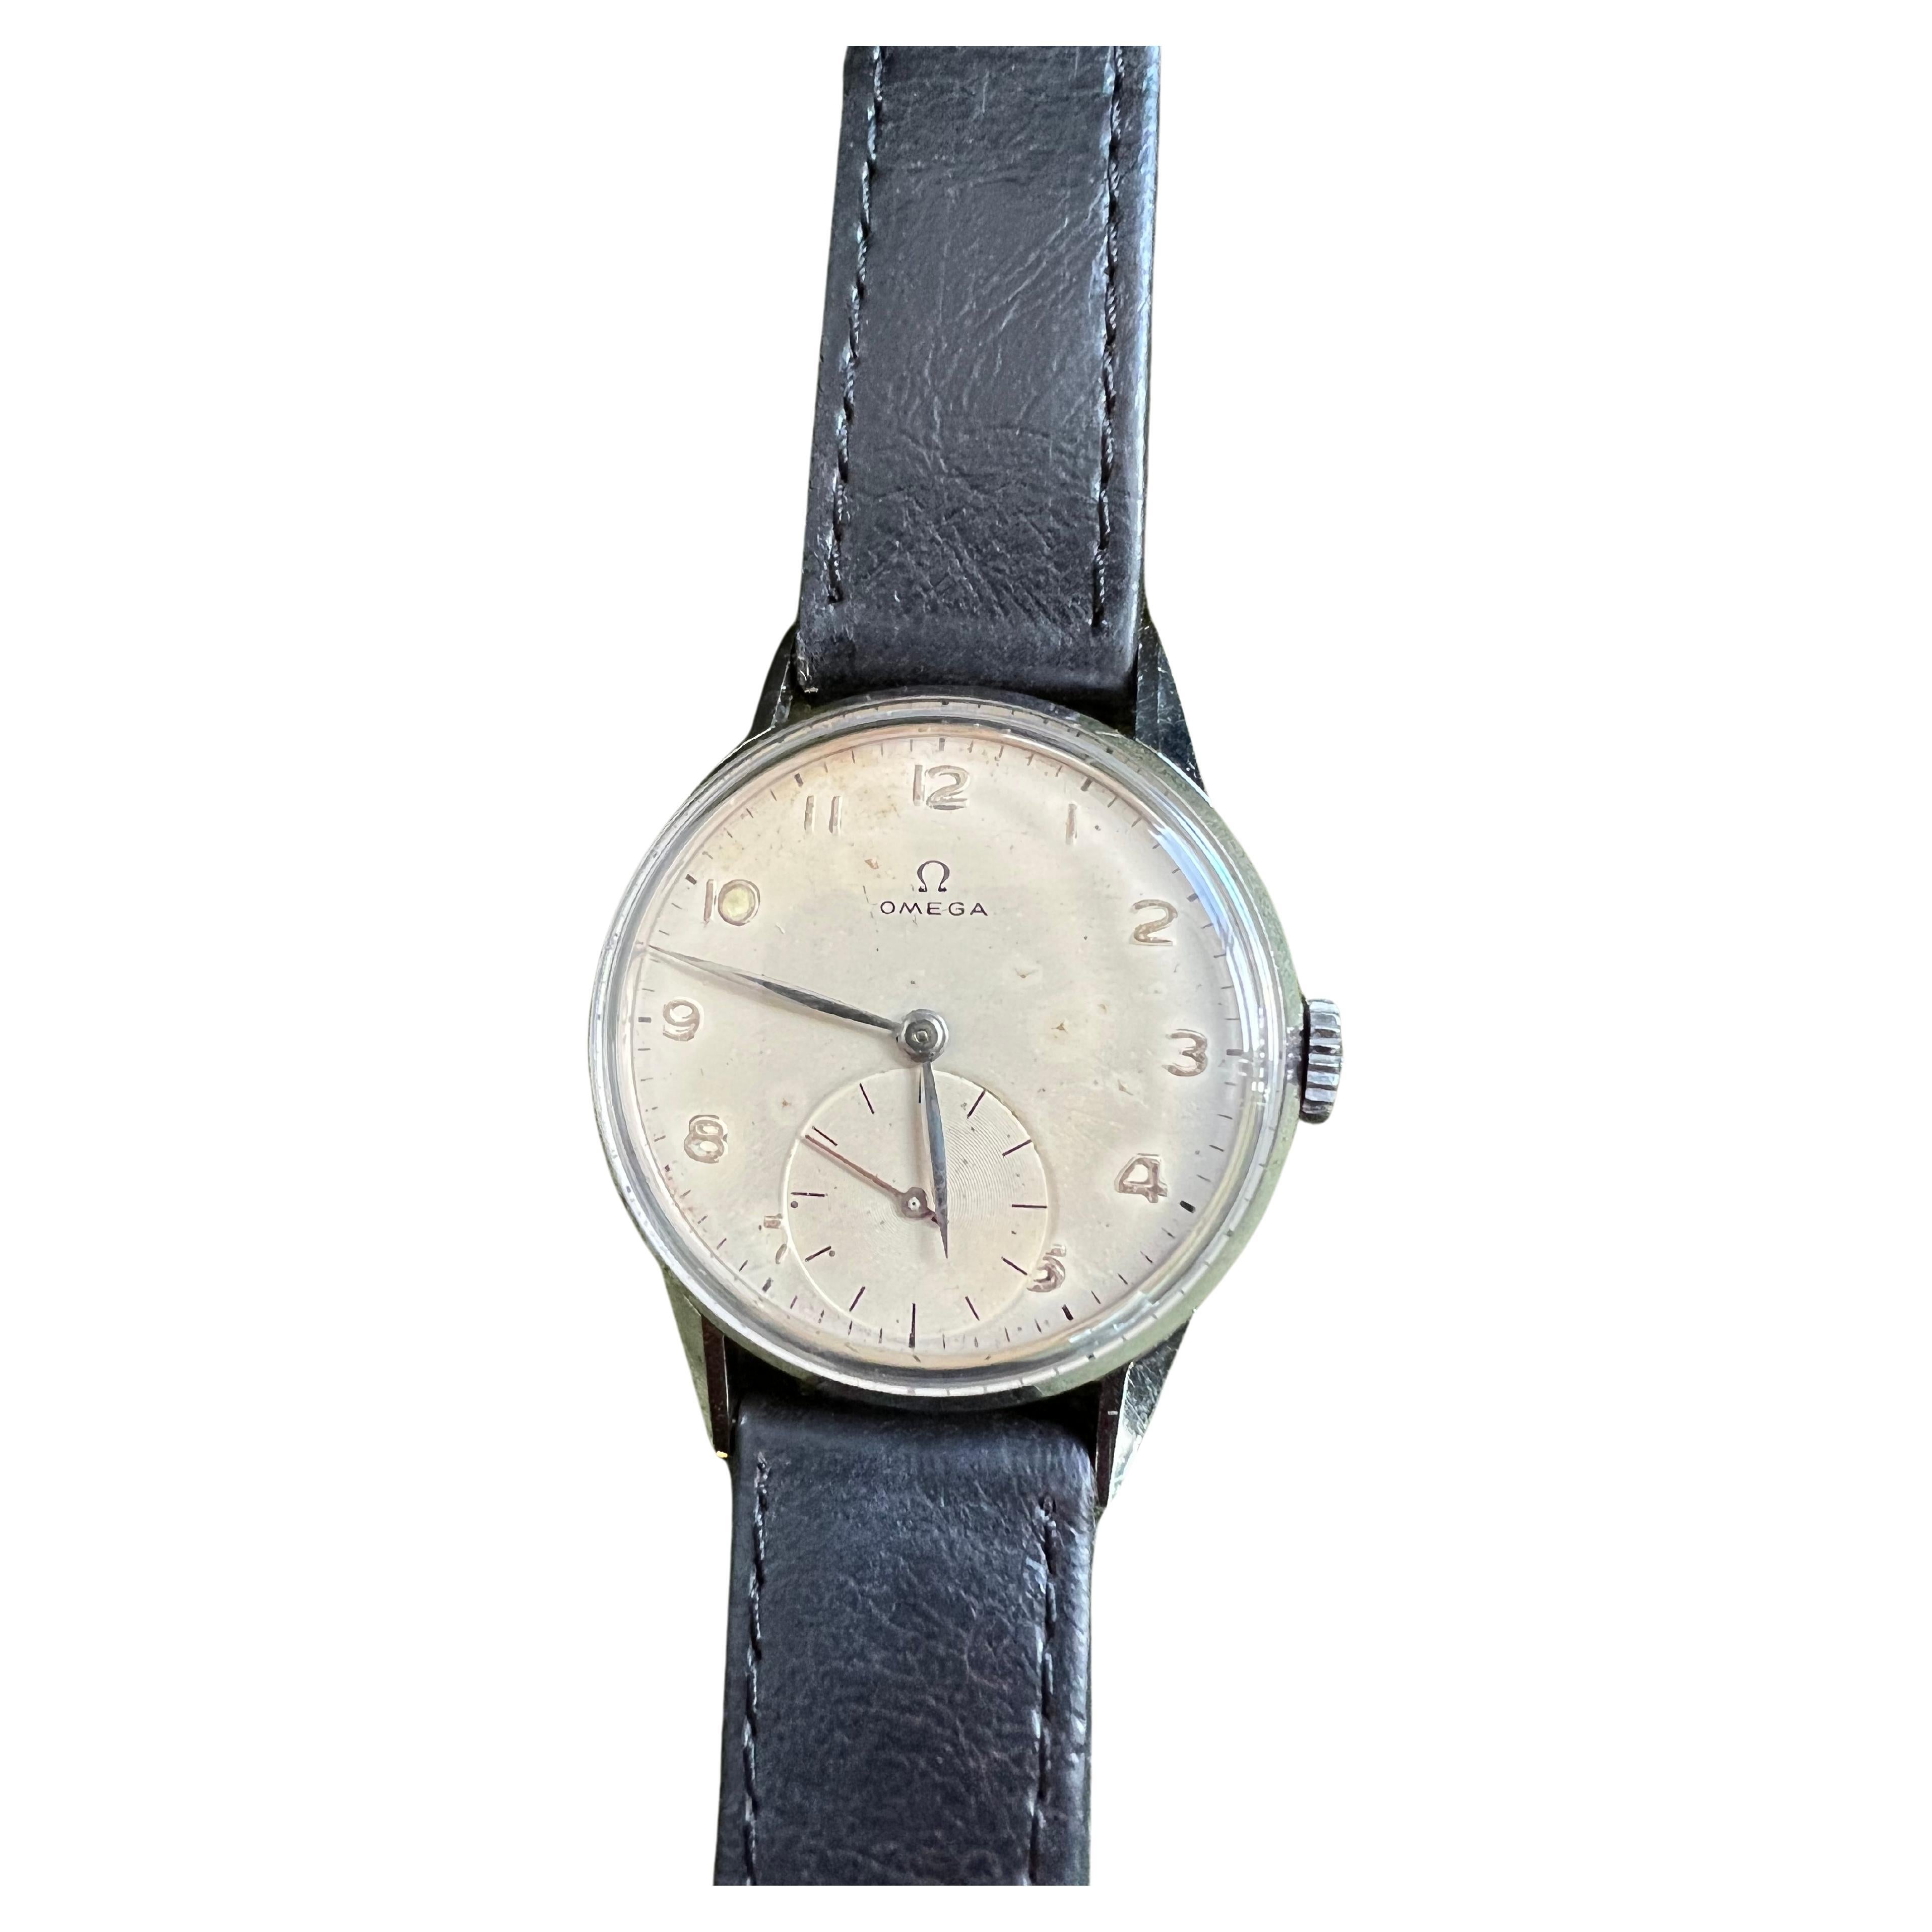 Rare montre Omega Chronomètre Vintage 1944 délivrée par l'US Navy
Ce qui est étonnant à propos de cette montre, c'est qu'elle est en parfait état de marche et qu'elle est également très belle pour son âge. Il s'agit d'un morceau d'histoire et en